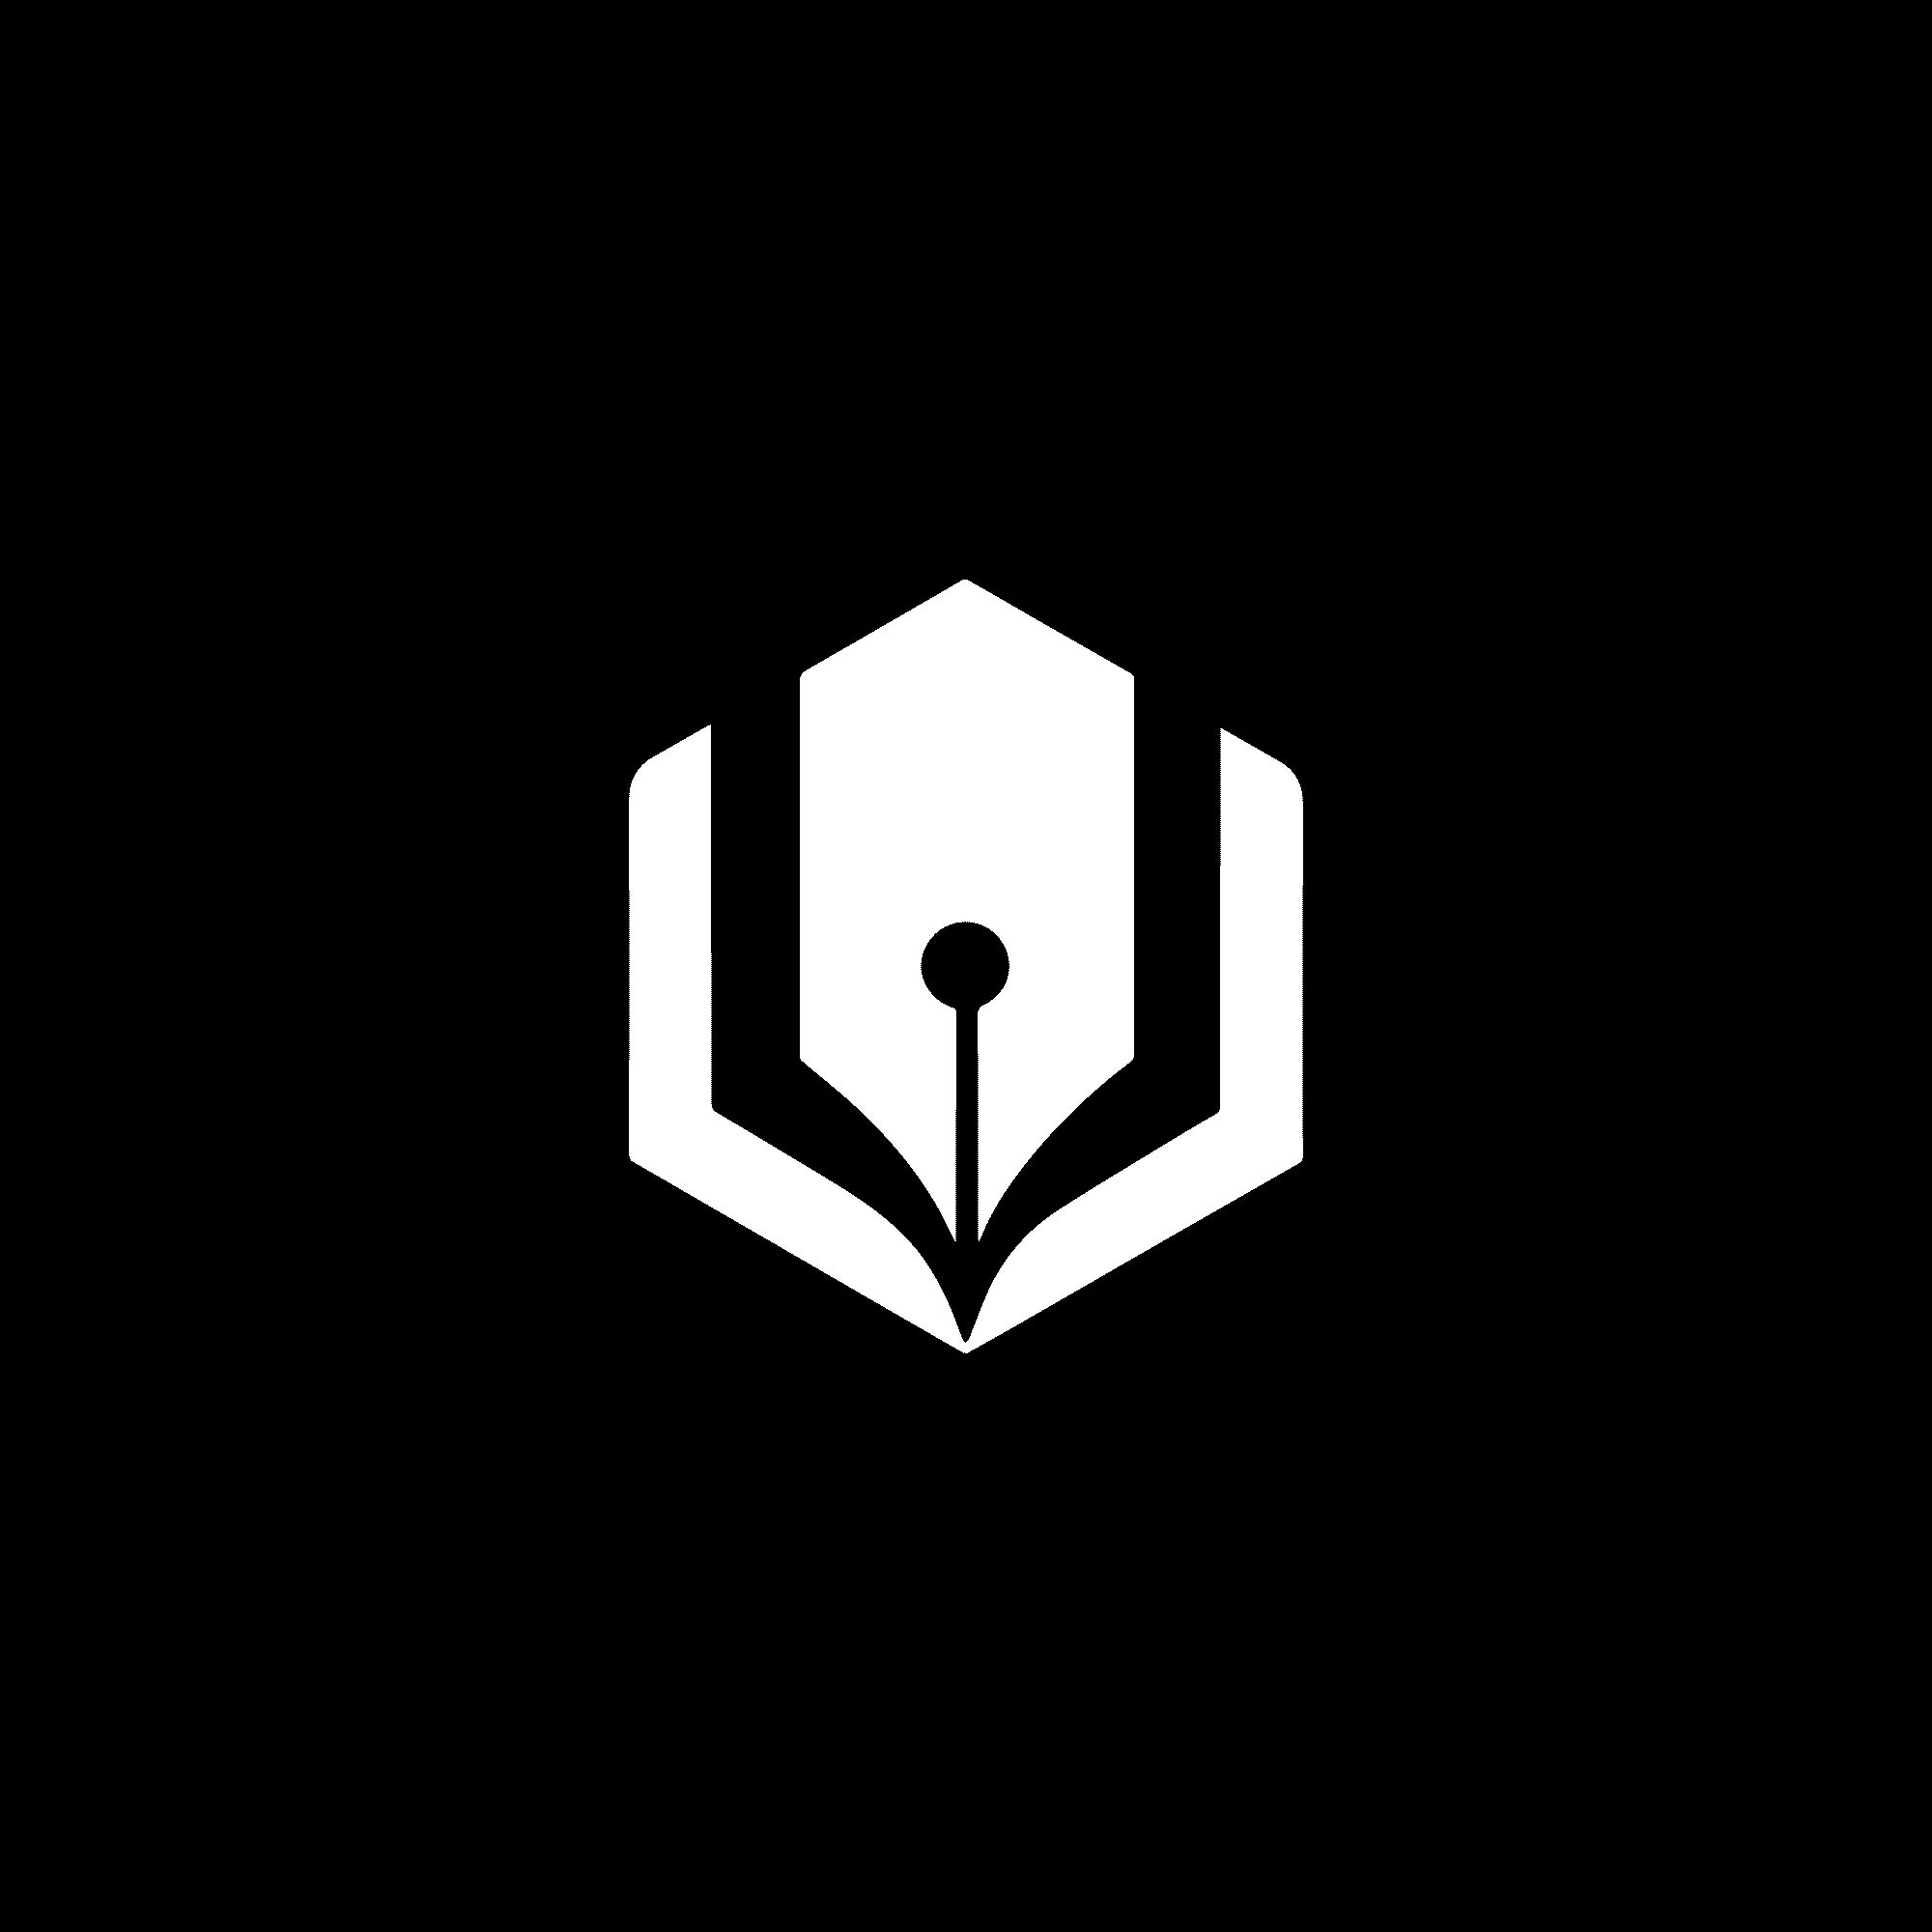 Branding logo design of fountain pen and book